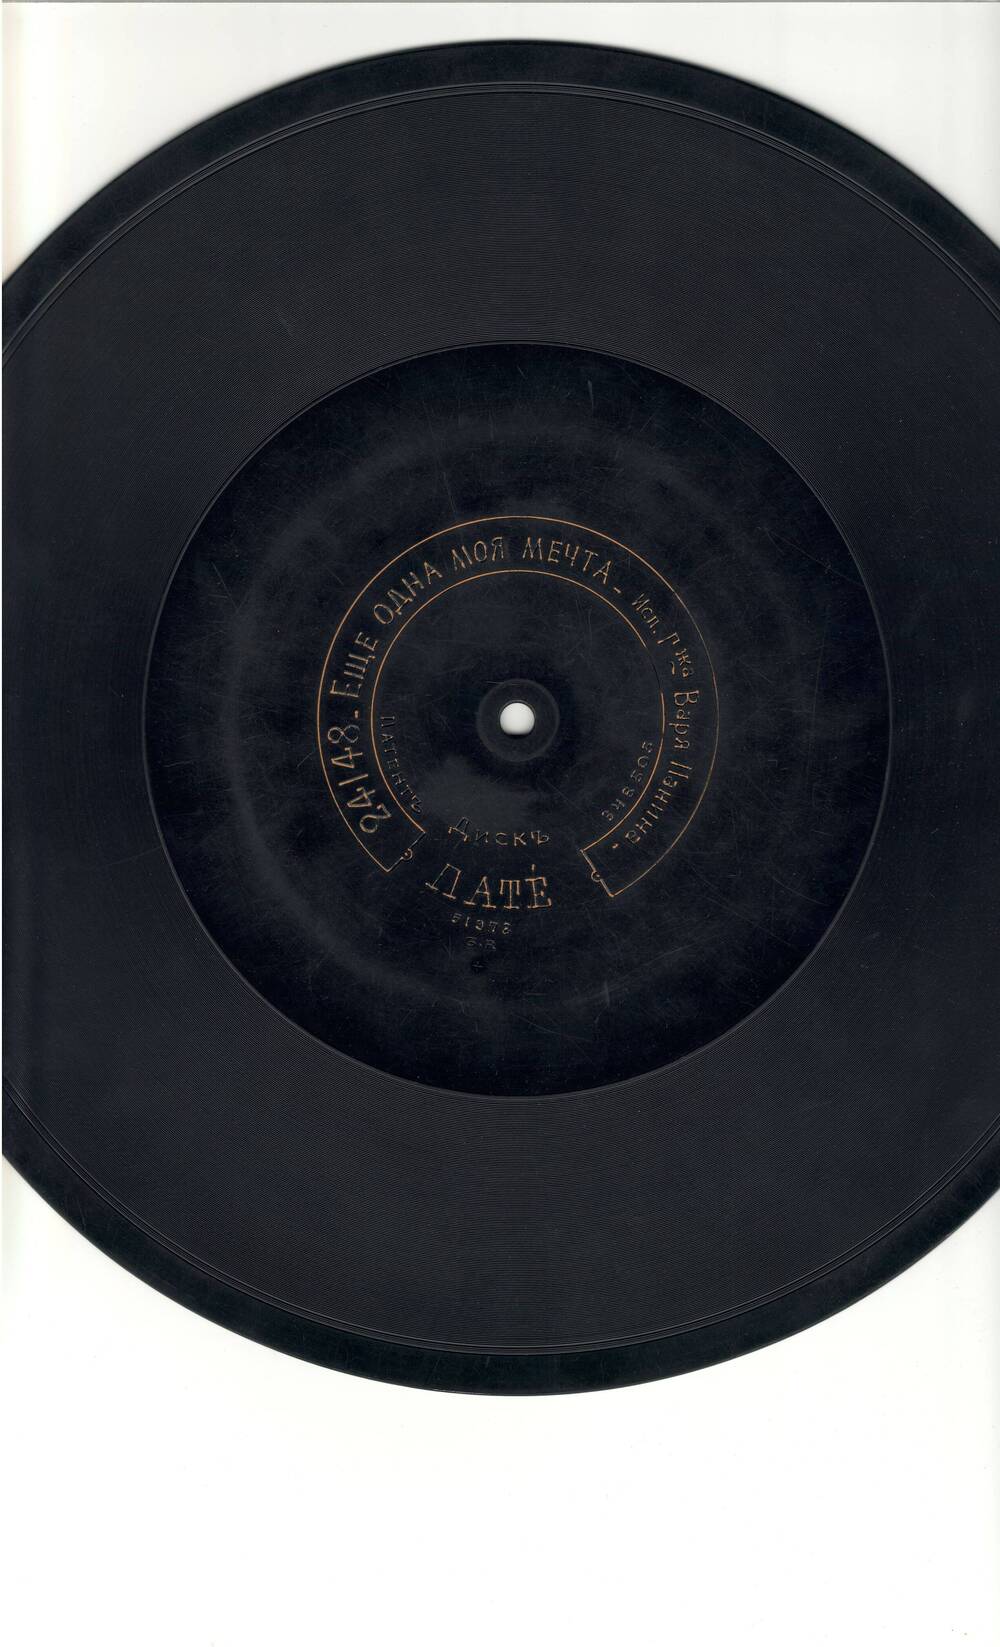 Пластинка граммофонная фирмы Пате с записями Дремлют плакучие ивы  / Еще одна моя мечта, исполн. г-жа Варя Панина